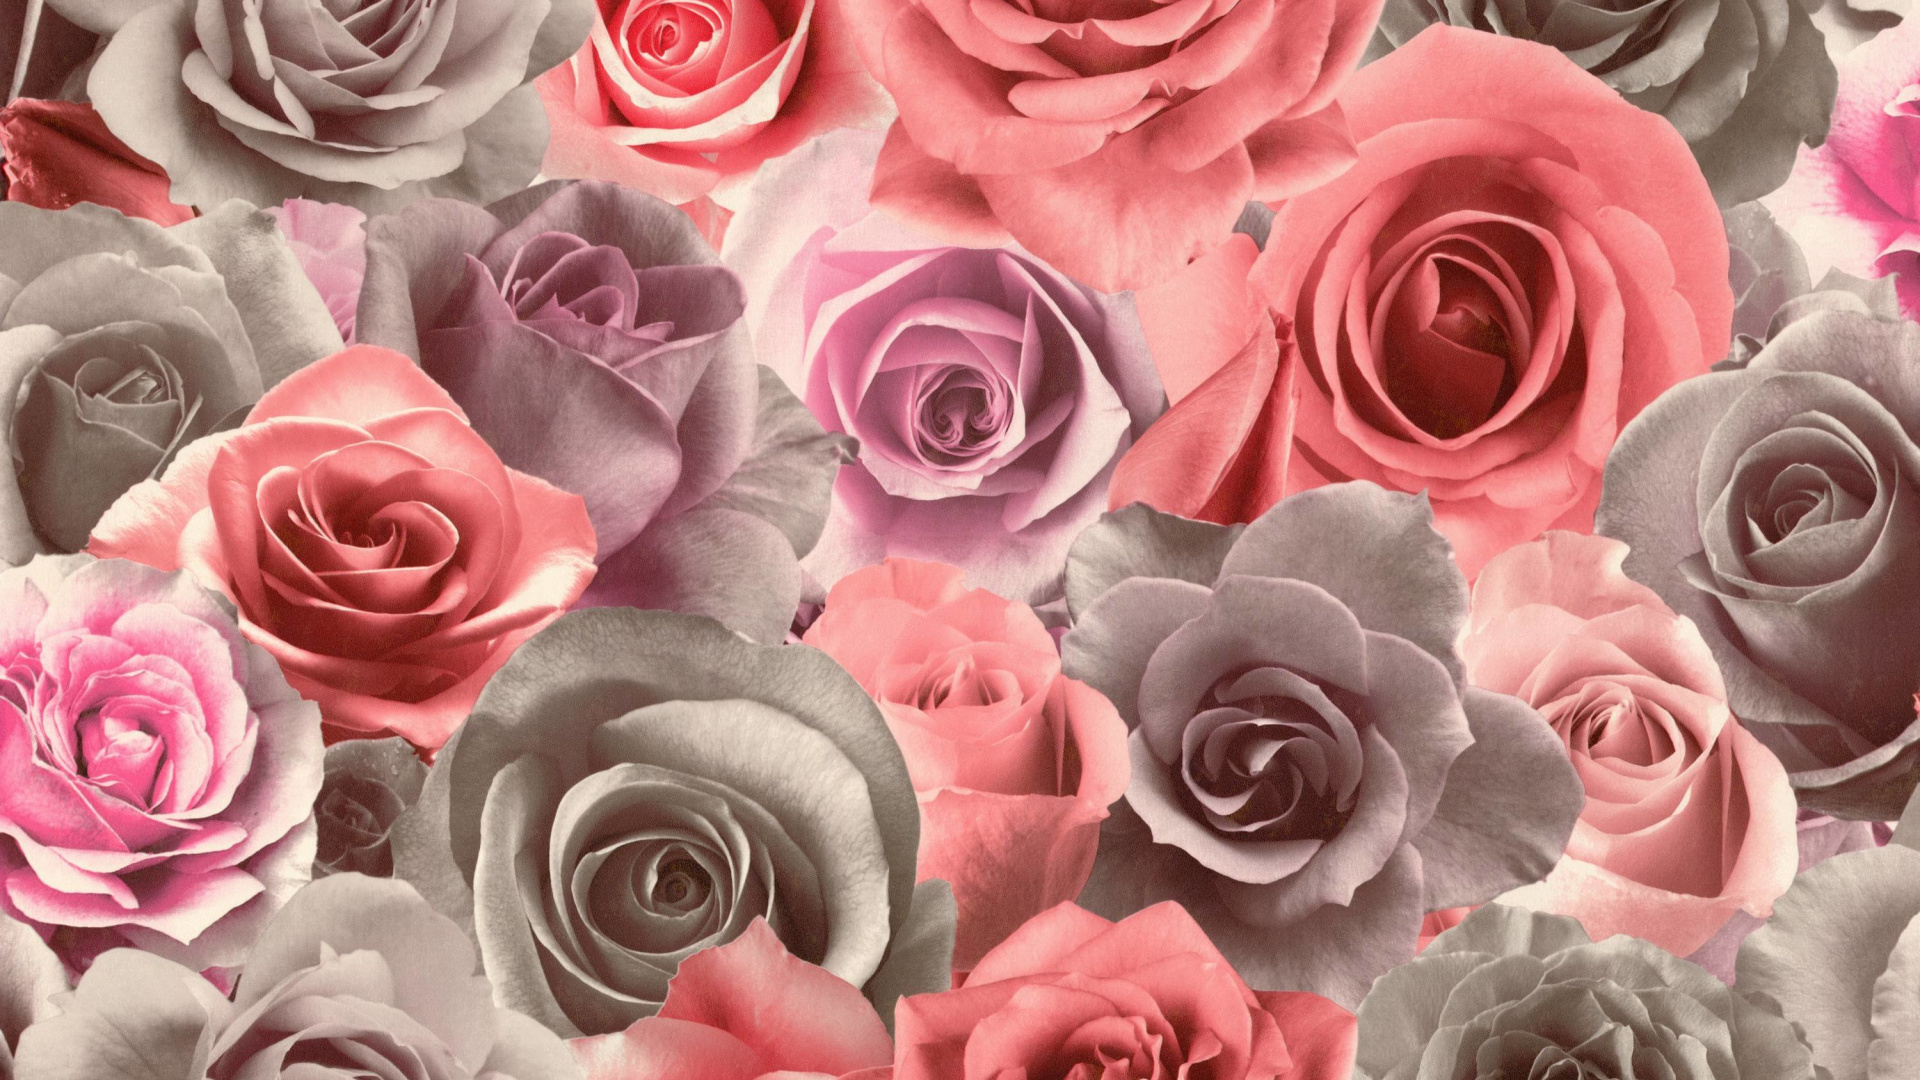 Rosas Rosadas en Fotografía de Cerca. Wallpaper in 1920x1080 Resolution